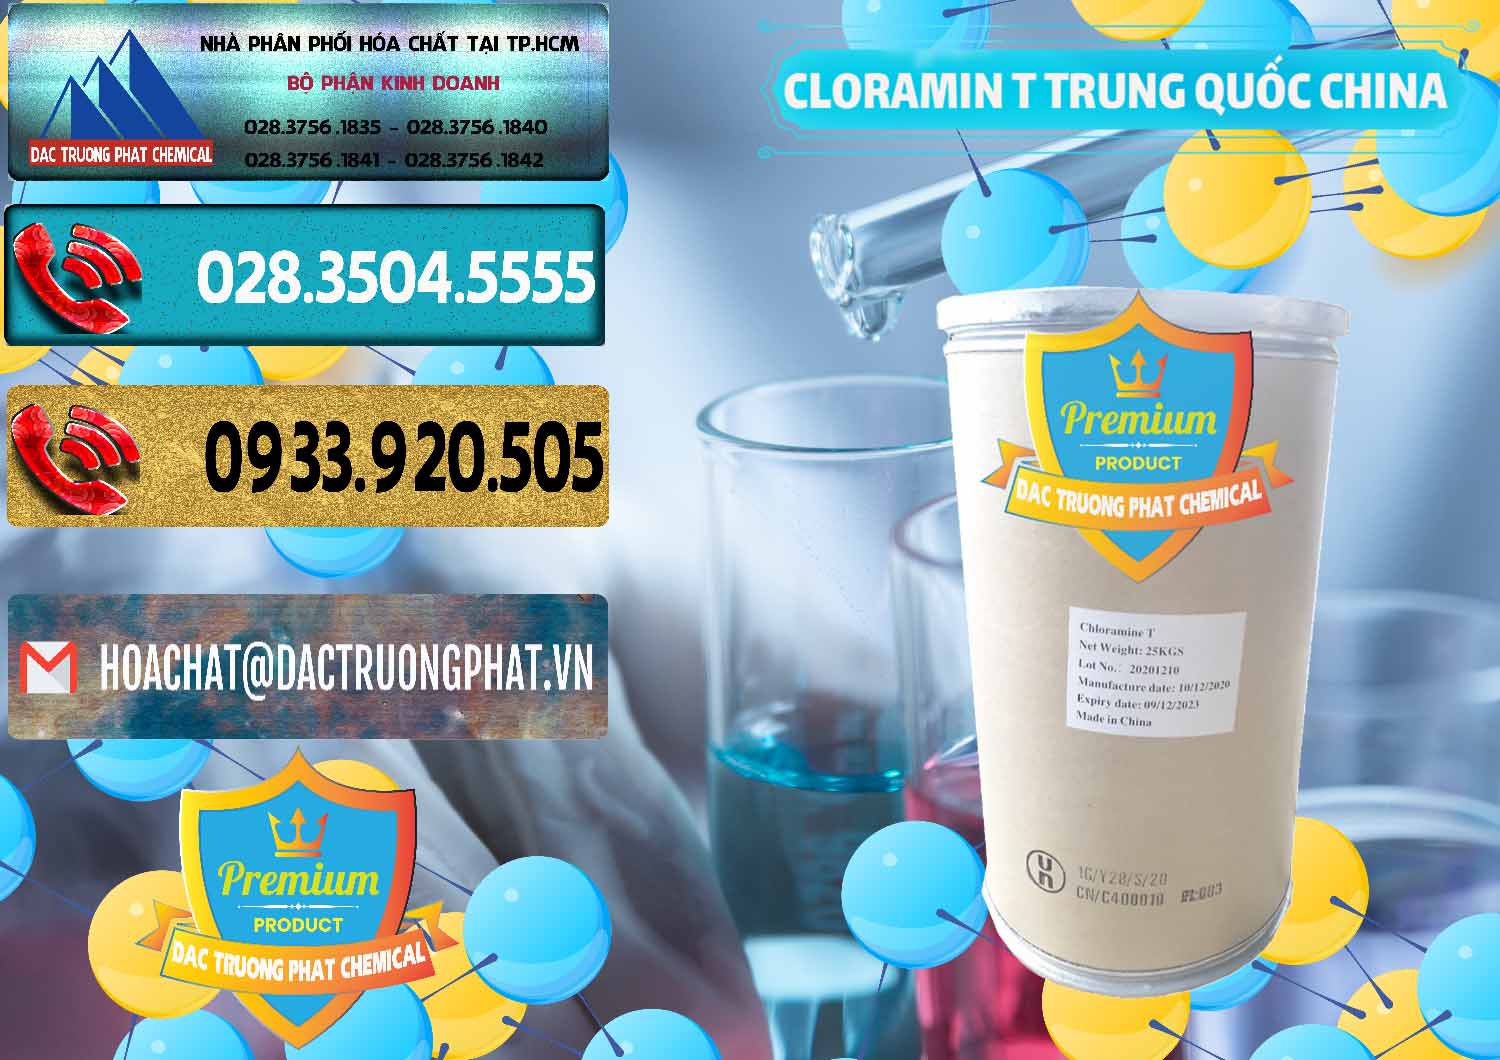 Đơn vị chuyên bán & cung cấp Cloramin T Khử Trùng, Diệt Khuẩn Trung Quốc China - 0301 - Công ty cung cấp & phân phối hóa chất tại TP.HCM - hoachatdetnhuom.com